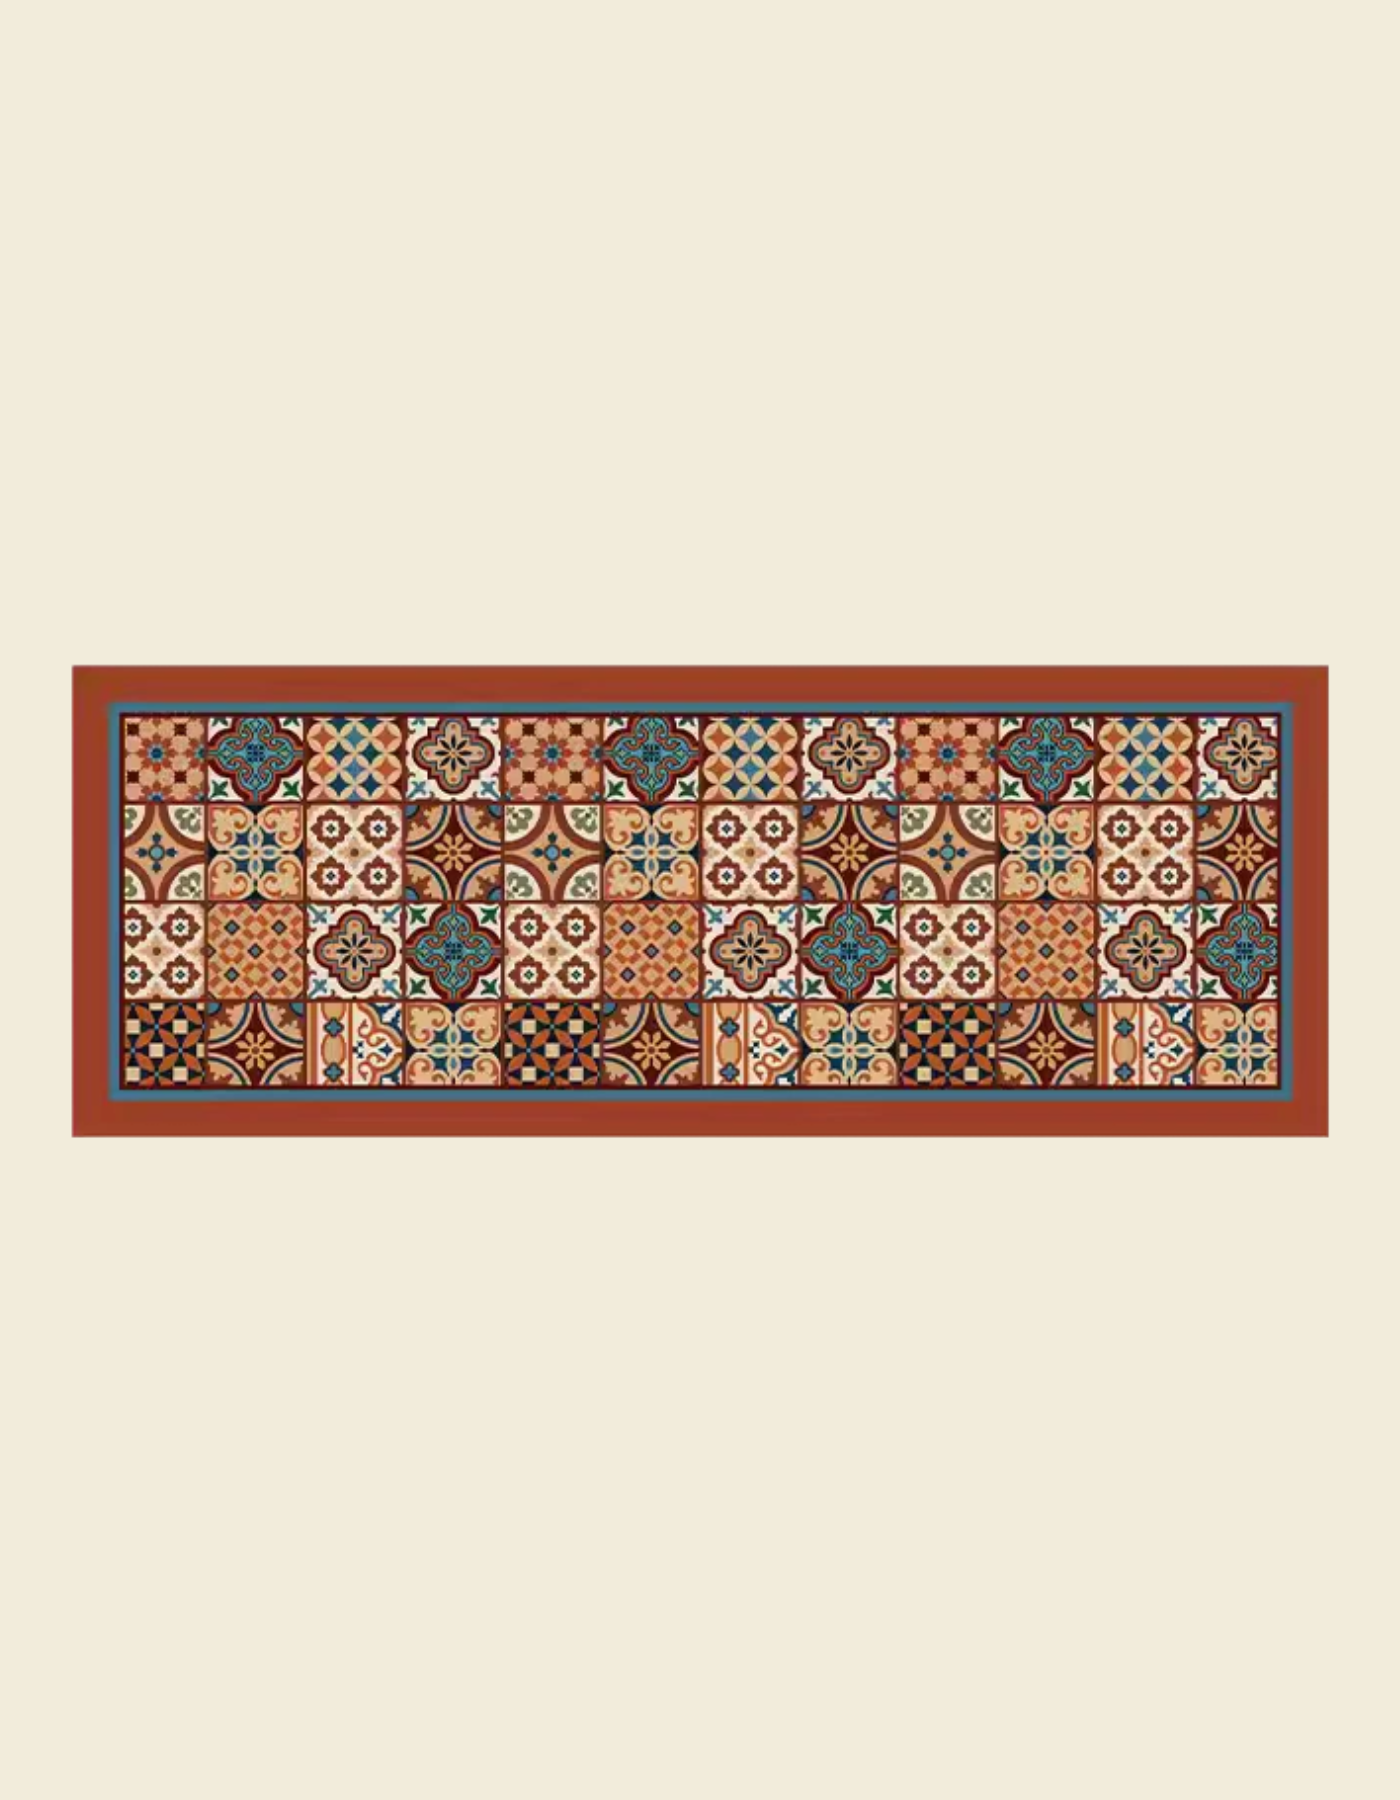 https://maisonmatta.ca/cdn/shop/files/mexican-tiles-kitchen-mat-sample-0.png?v=1700149188&width=1445